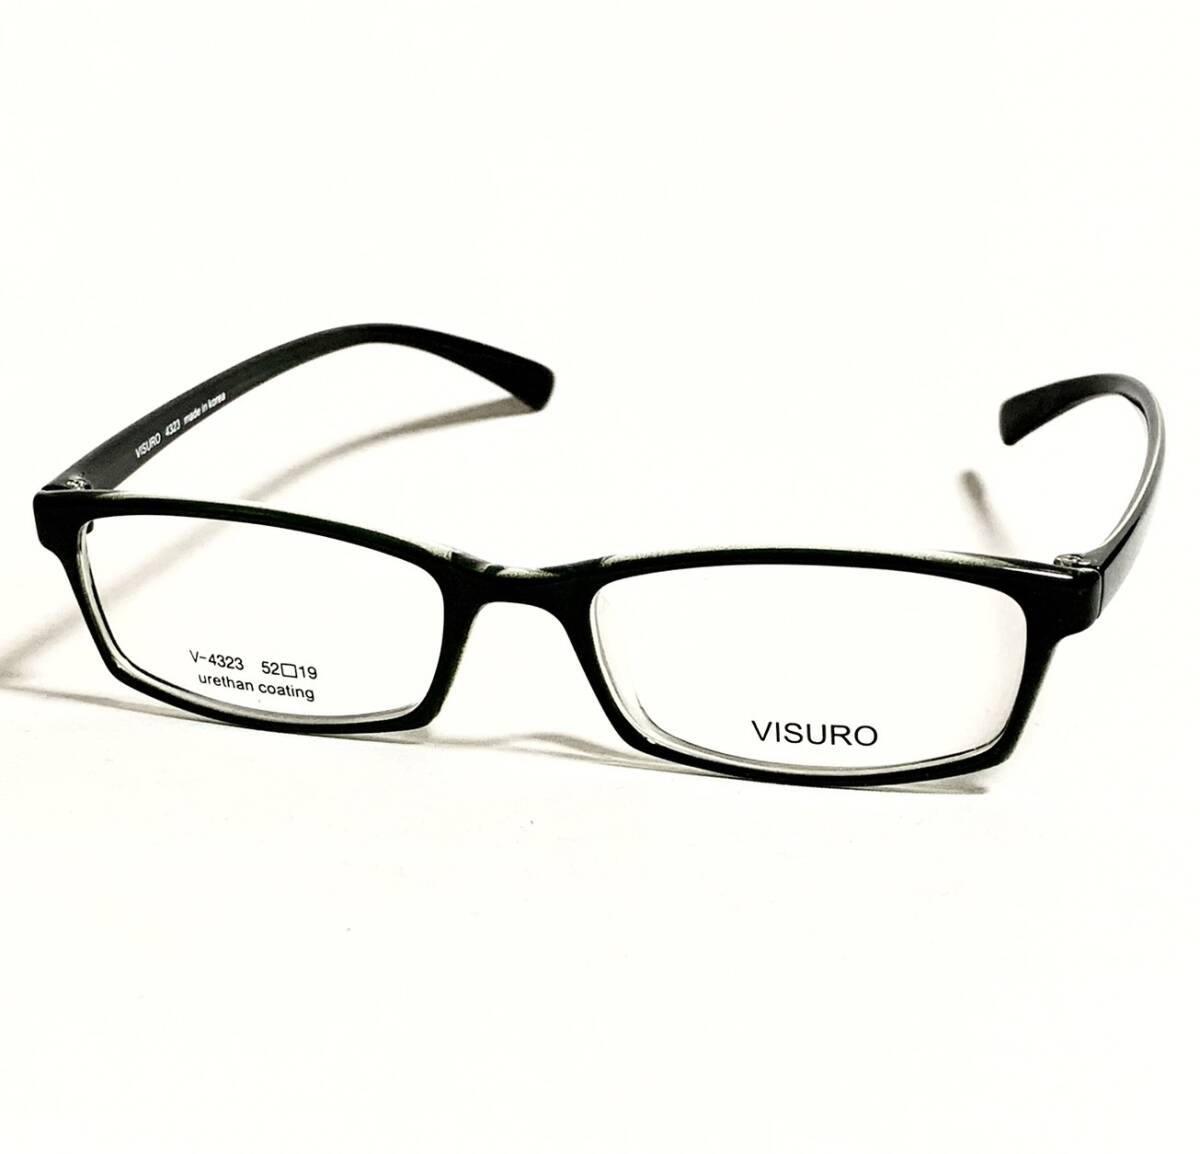 メガネフレーム 眼鏡フレーム レンズ交換用 セルフレーム 52□19ー140 カラーネフレーム プラスチックフレーム レンズ交換可能 の画像1